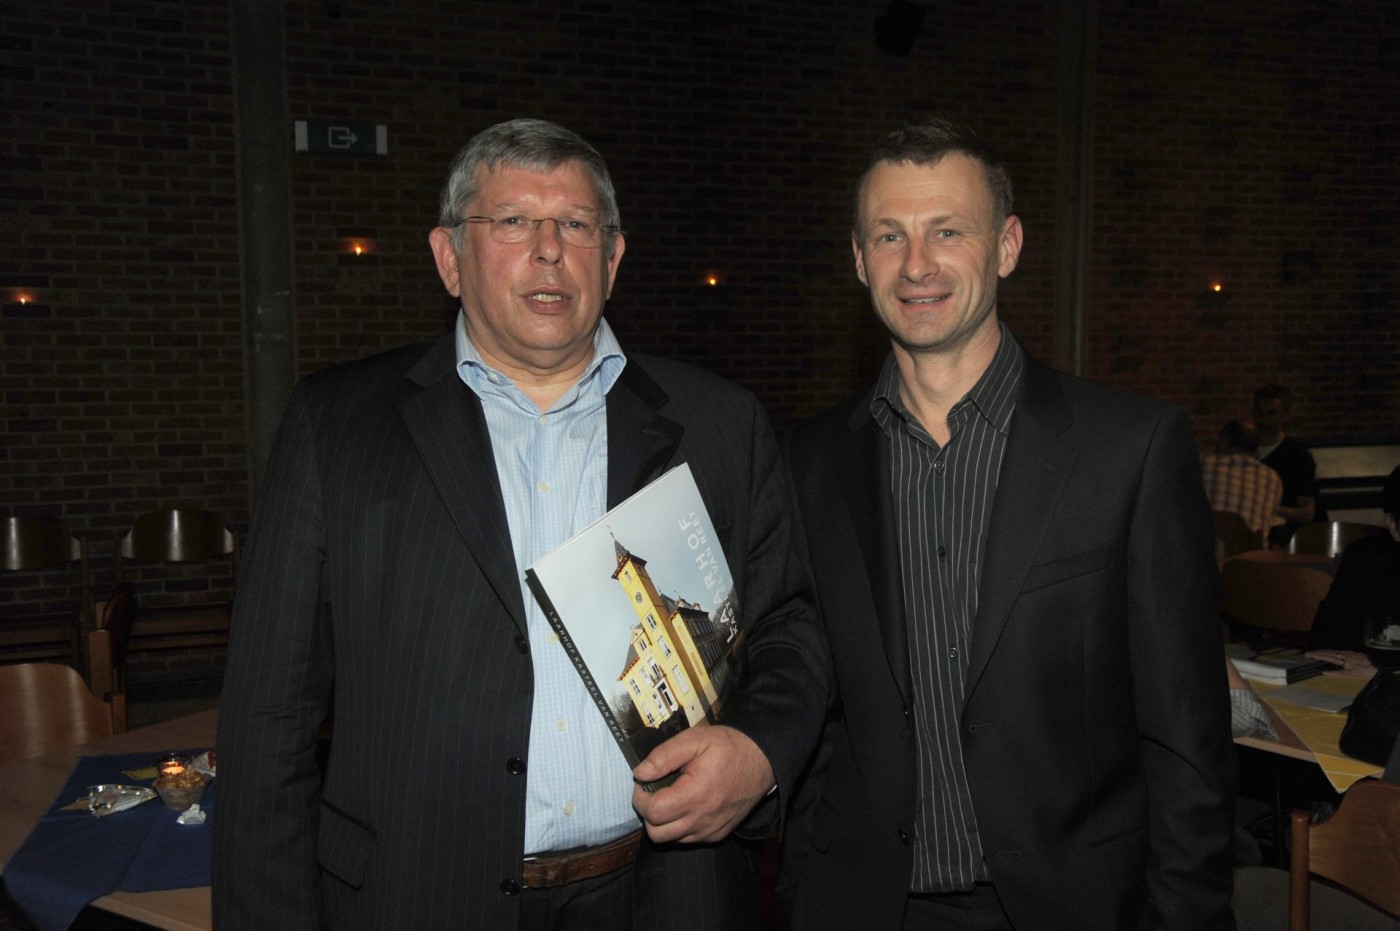 In 2011 was Davidsfonds - Reet de uitgever van het boek 'Laarhof - Kasteel van Reet'.  Op de foto staan de auteurs Leo Vermeulen en Jan Bleys tijdens de presentatie van het boek in het Gildenhuis.